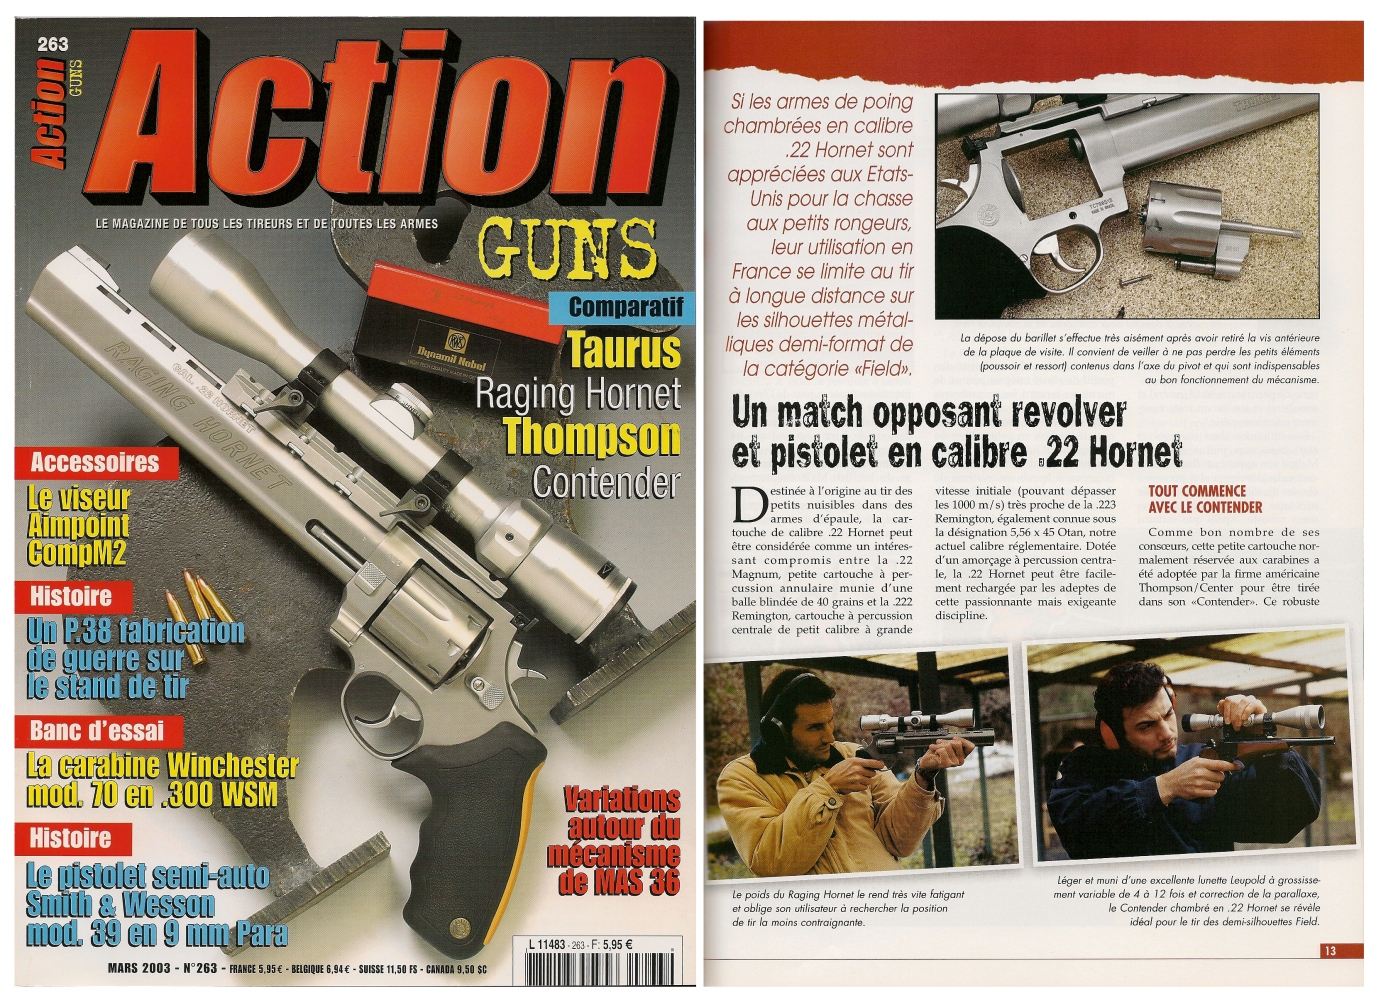 Le banc d'essai du revolver Taurus Raging Hornet opposé au pistolet Thompson Contender a été publié sur 8 pages dans le magazine Action Guns n°263 (mars 2003). 